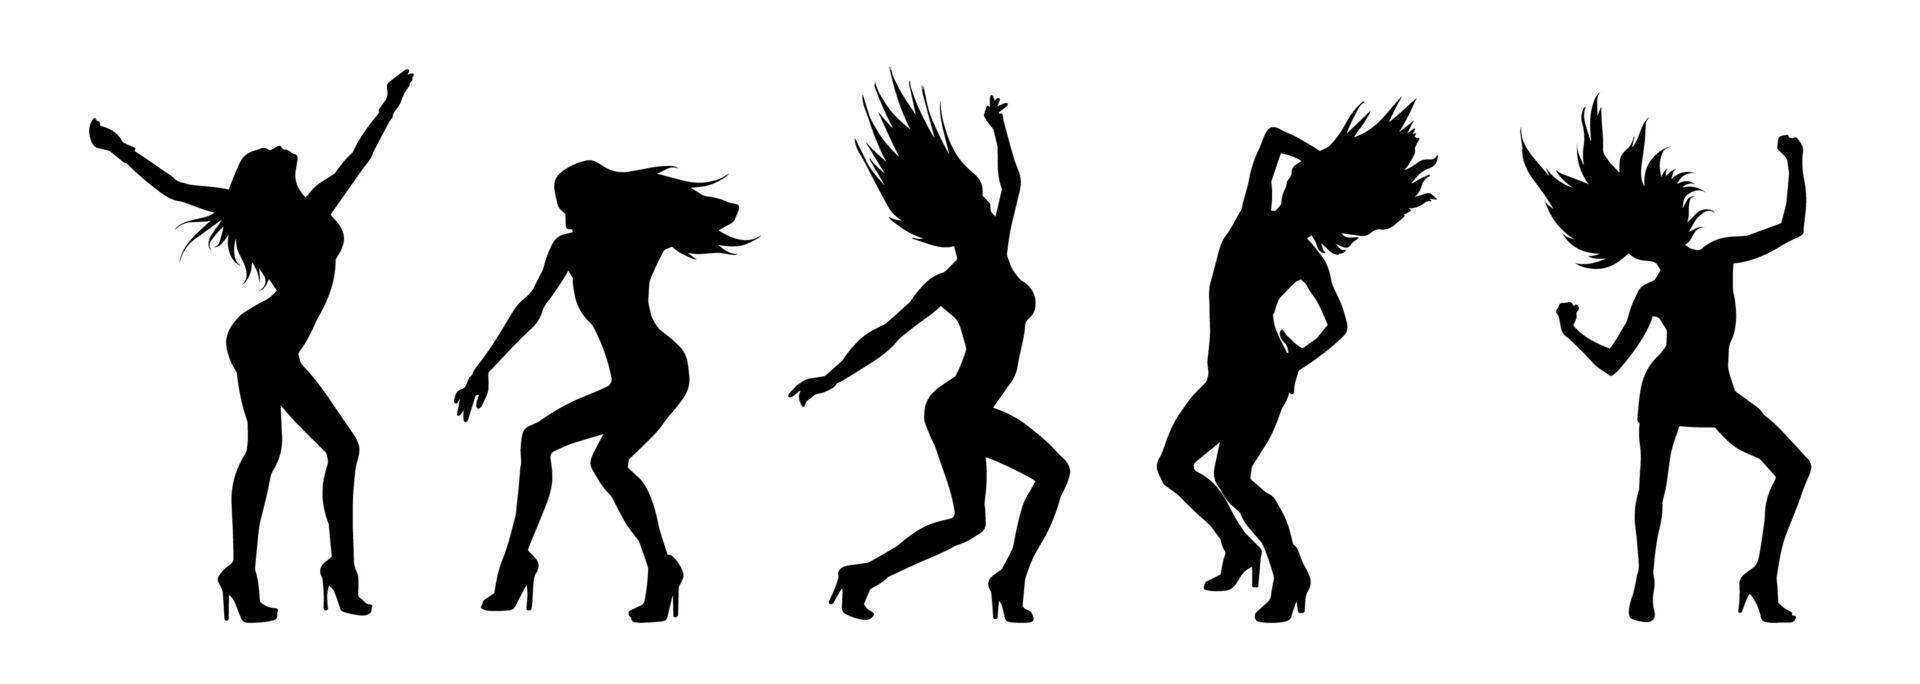 Silhouette Sammlung von weiblich Tänzer im Aktion Pose. Silhouette Gruppe von ein schlank Frau im Tanzen Pose. vektor